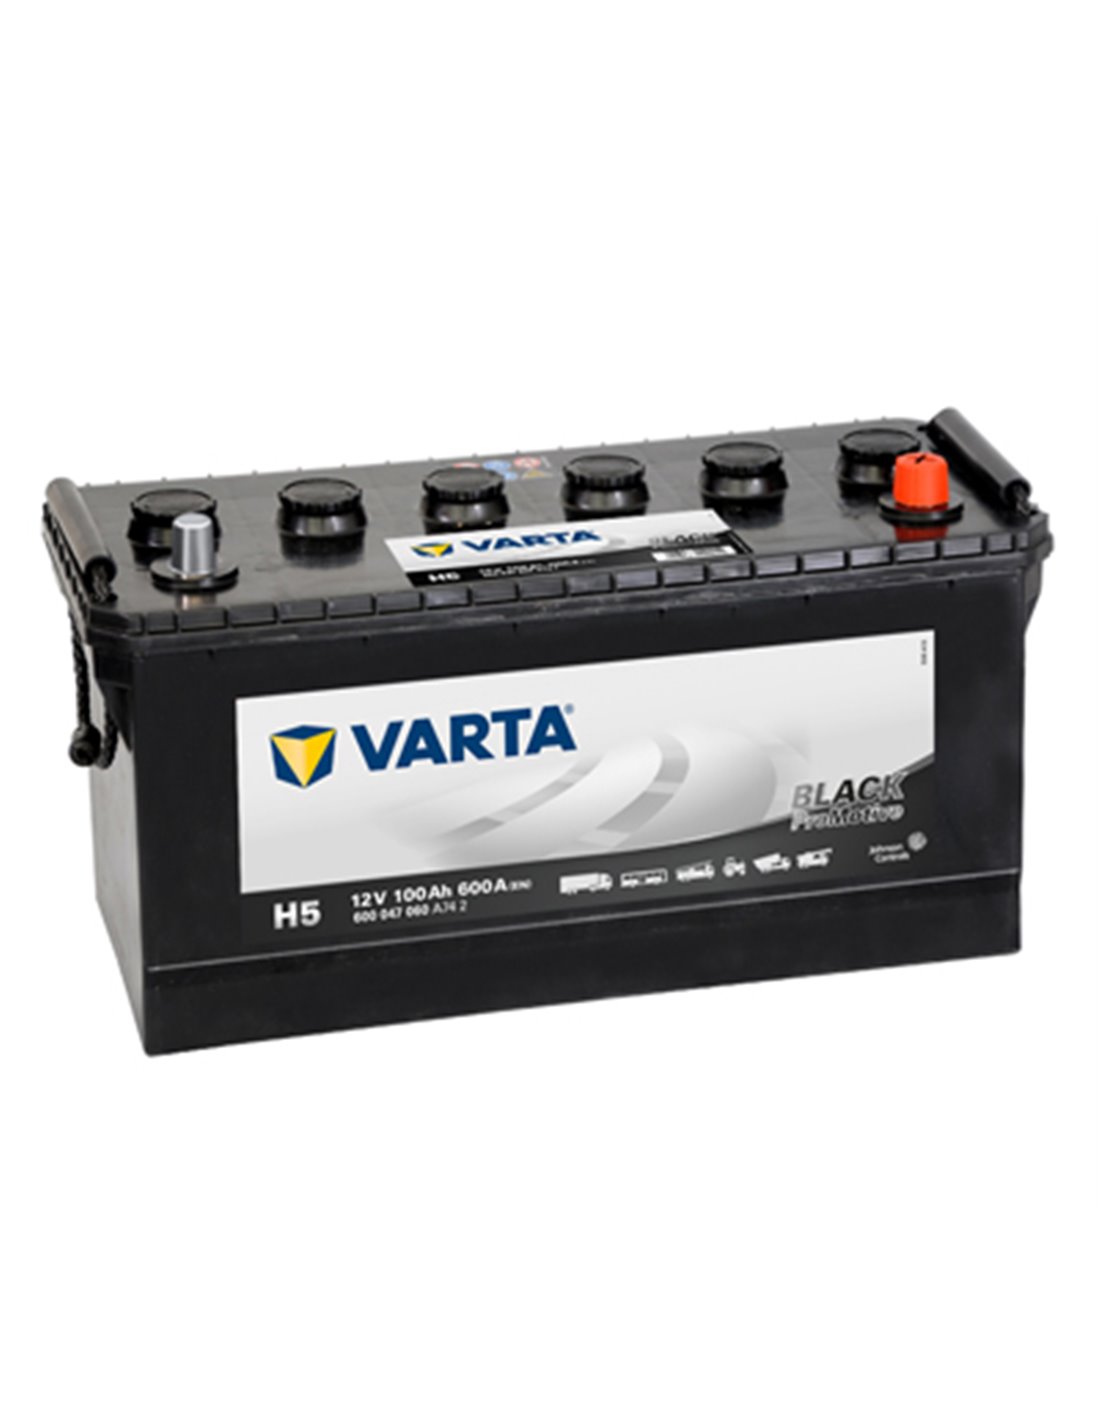 VARTA Promotive Black 12V 100Ah 600A - Borna Normala (dreapta +)